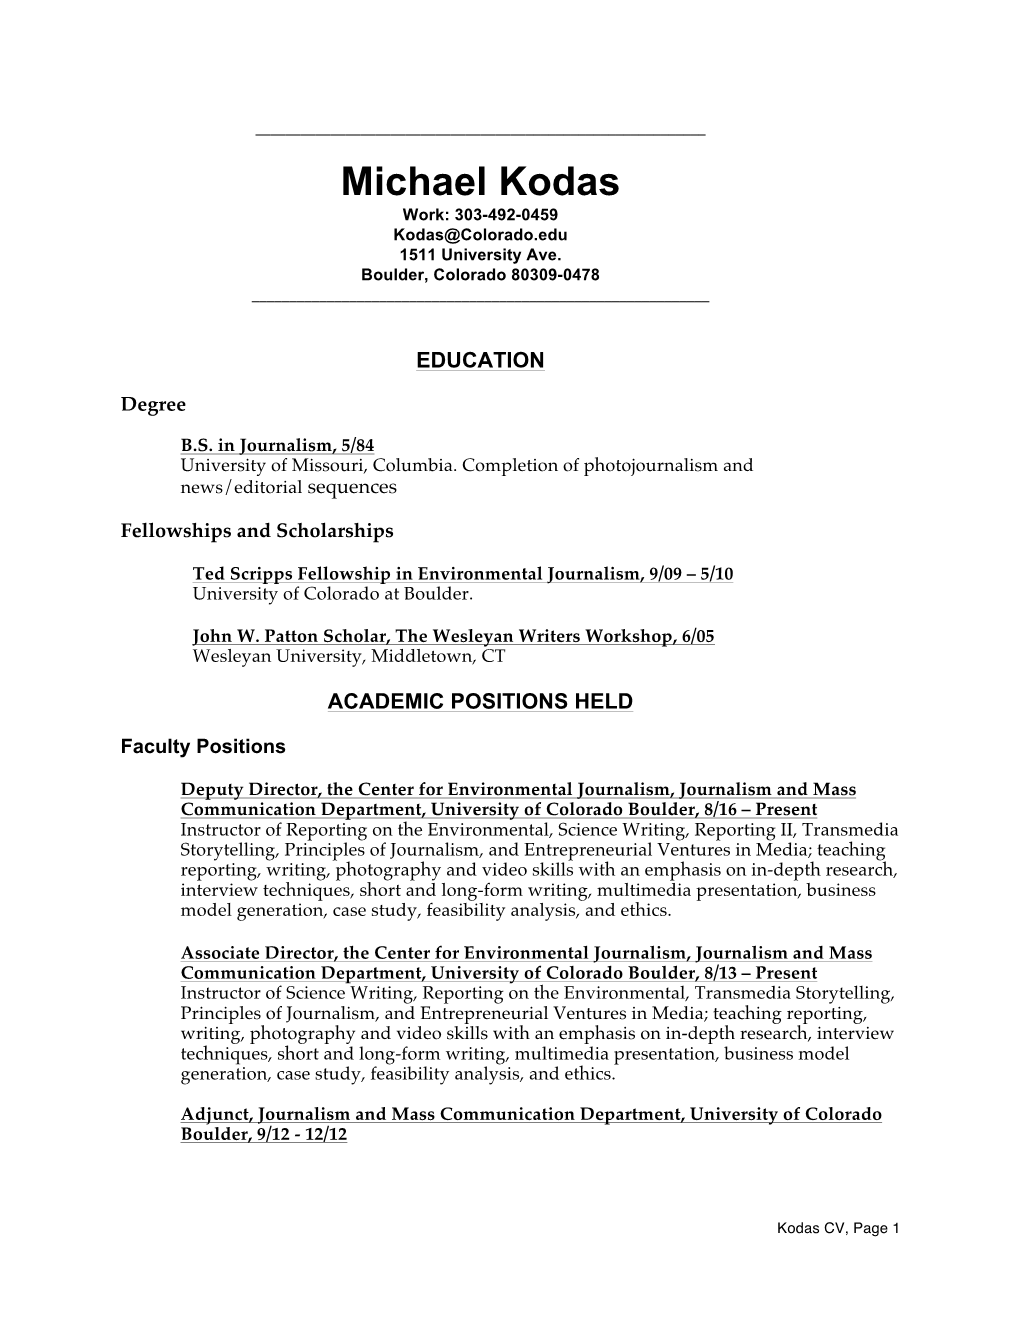 Michael Kodas Work: 303-492-0459 Kodas@Colorado.Edu 1511 University Ave